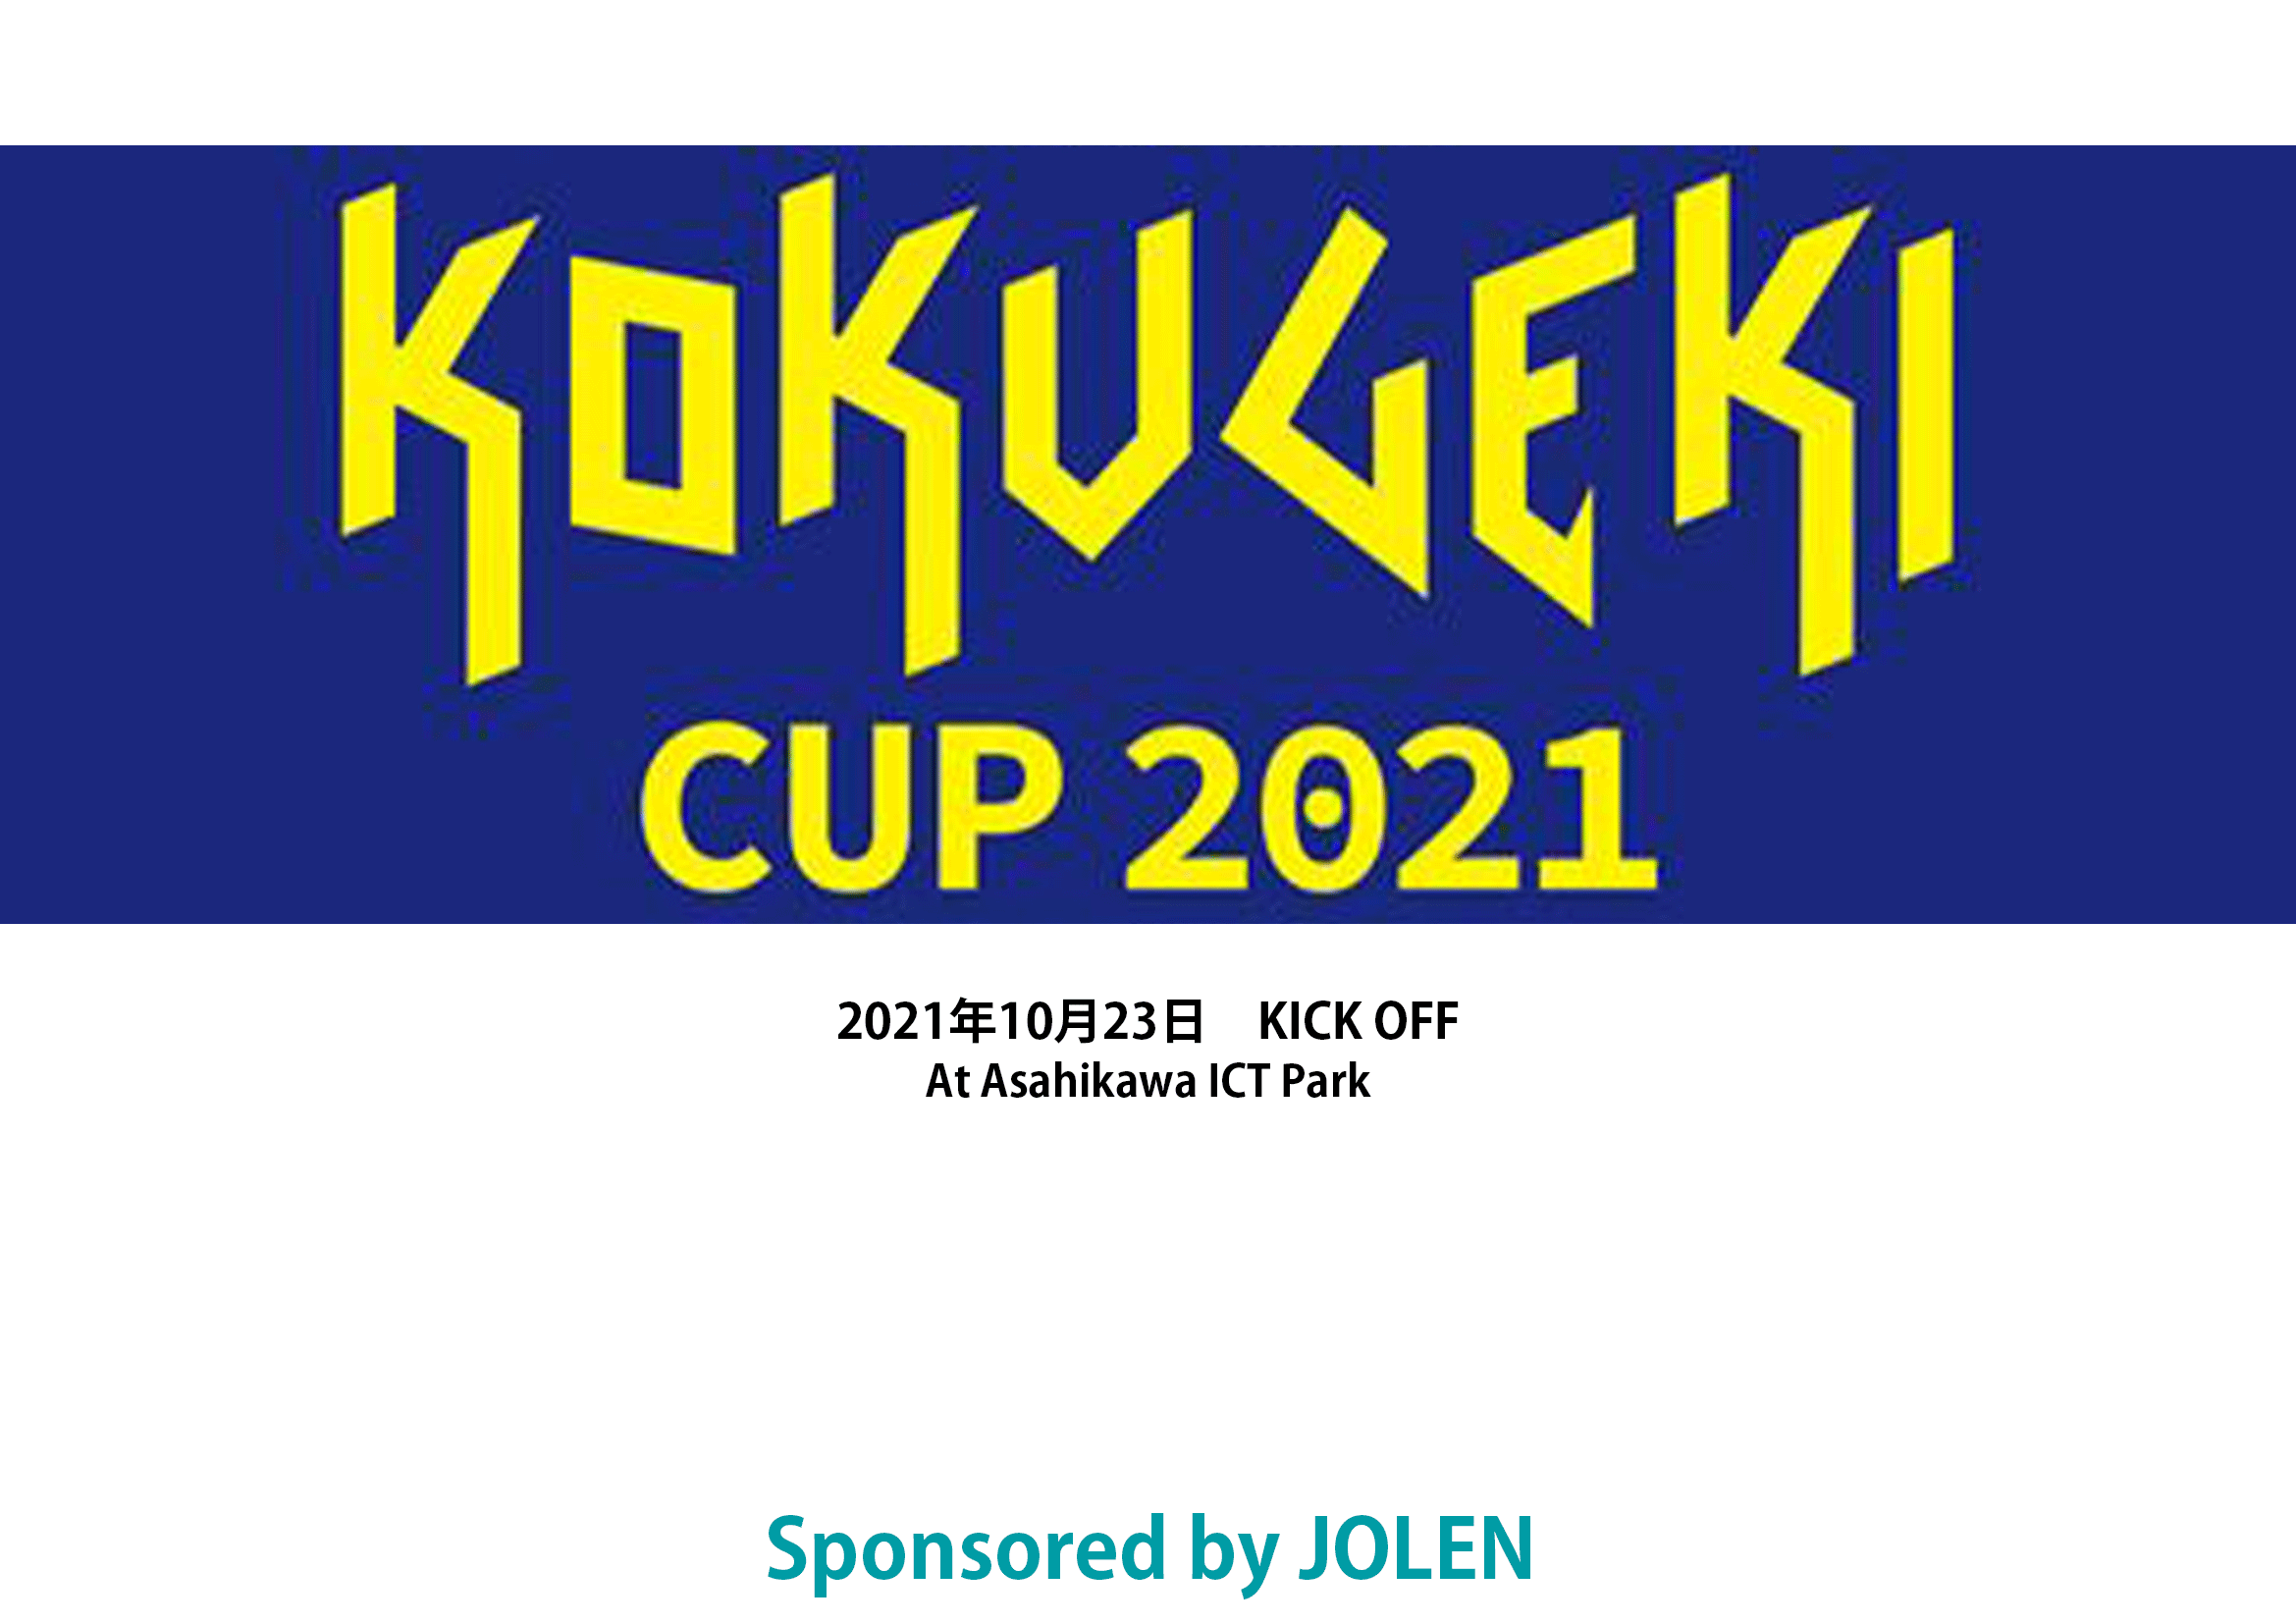 KOKUGEKI CUP 2021